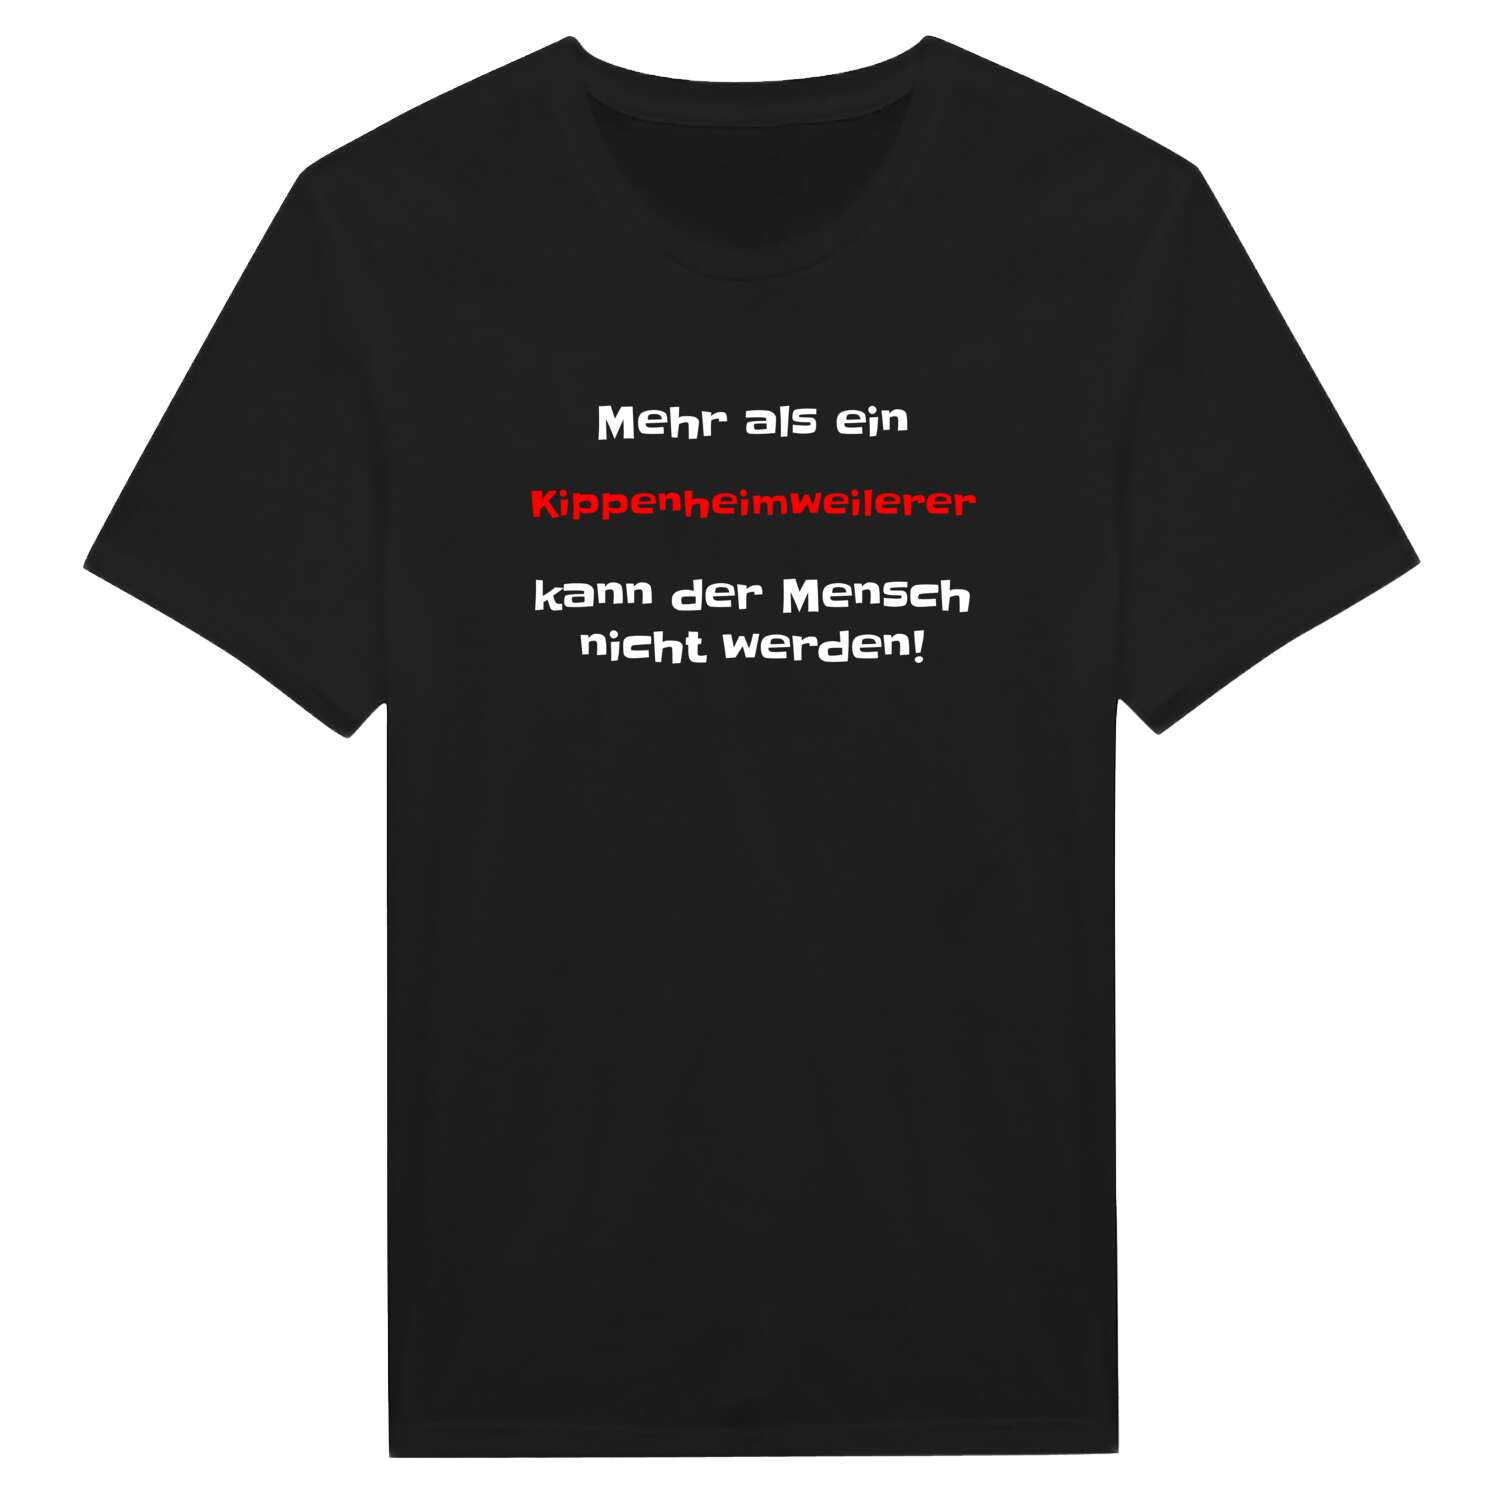 Kippenheimweiler T-Shirt »Mehr als ein«